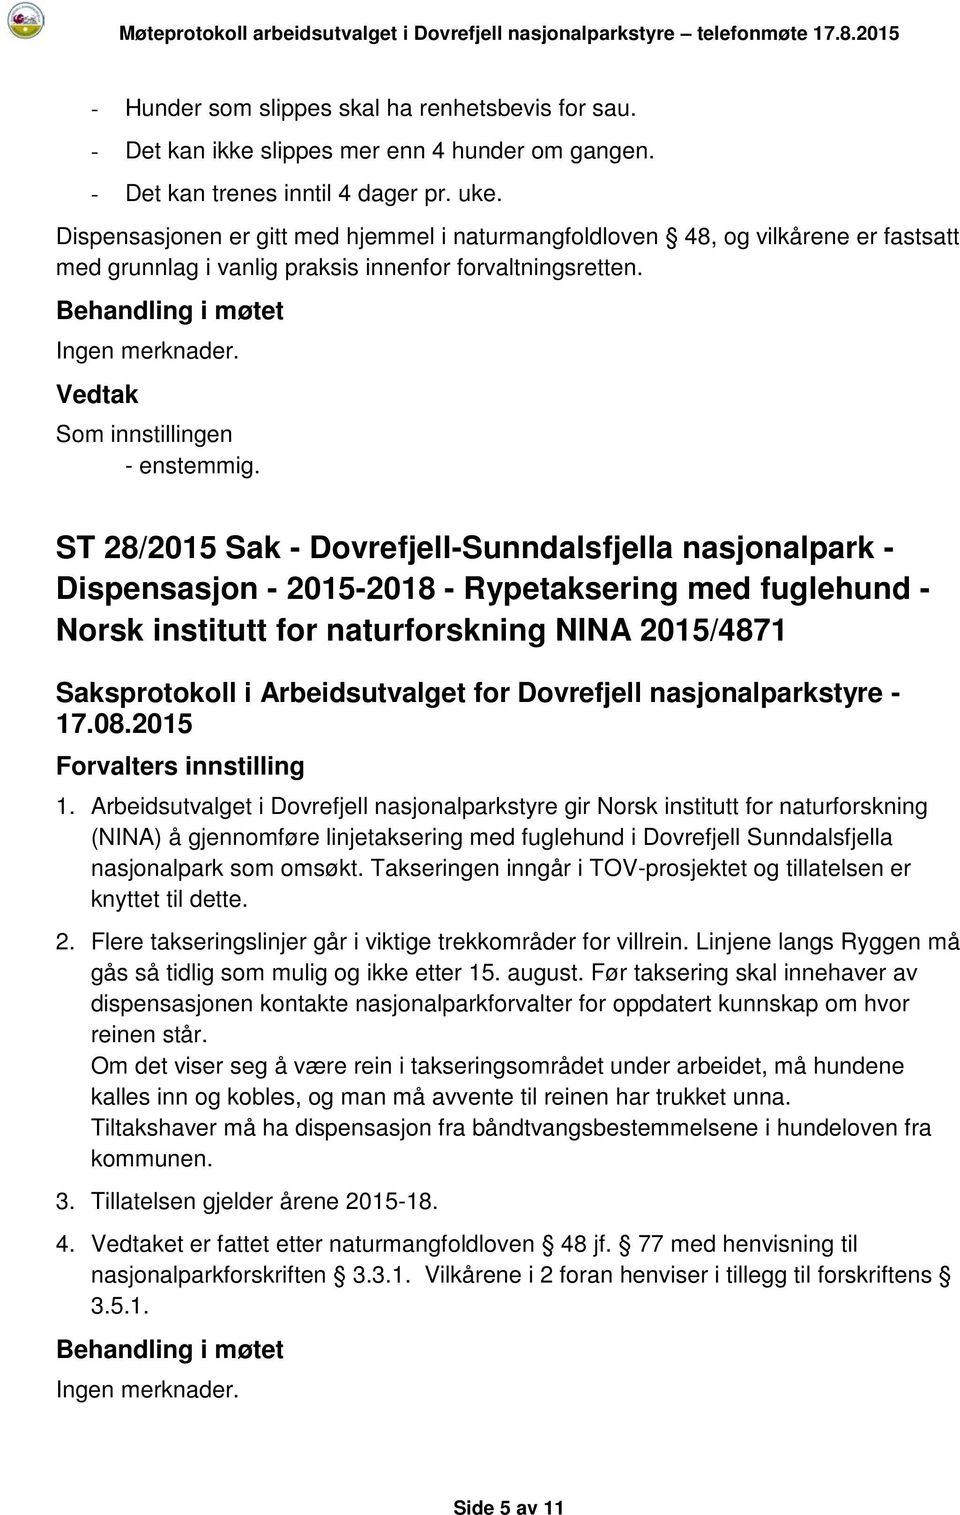 ST 28/2015 Sak - Dovrefjell-Sunndalsfjella nasjonalpark - Dispensasjon - 2015-2018 - Rypetaksering med fuglehund - Norsk institutt for naturforskning NINA 2015/4871 1.